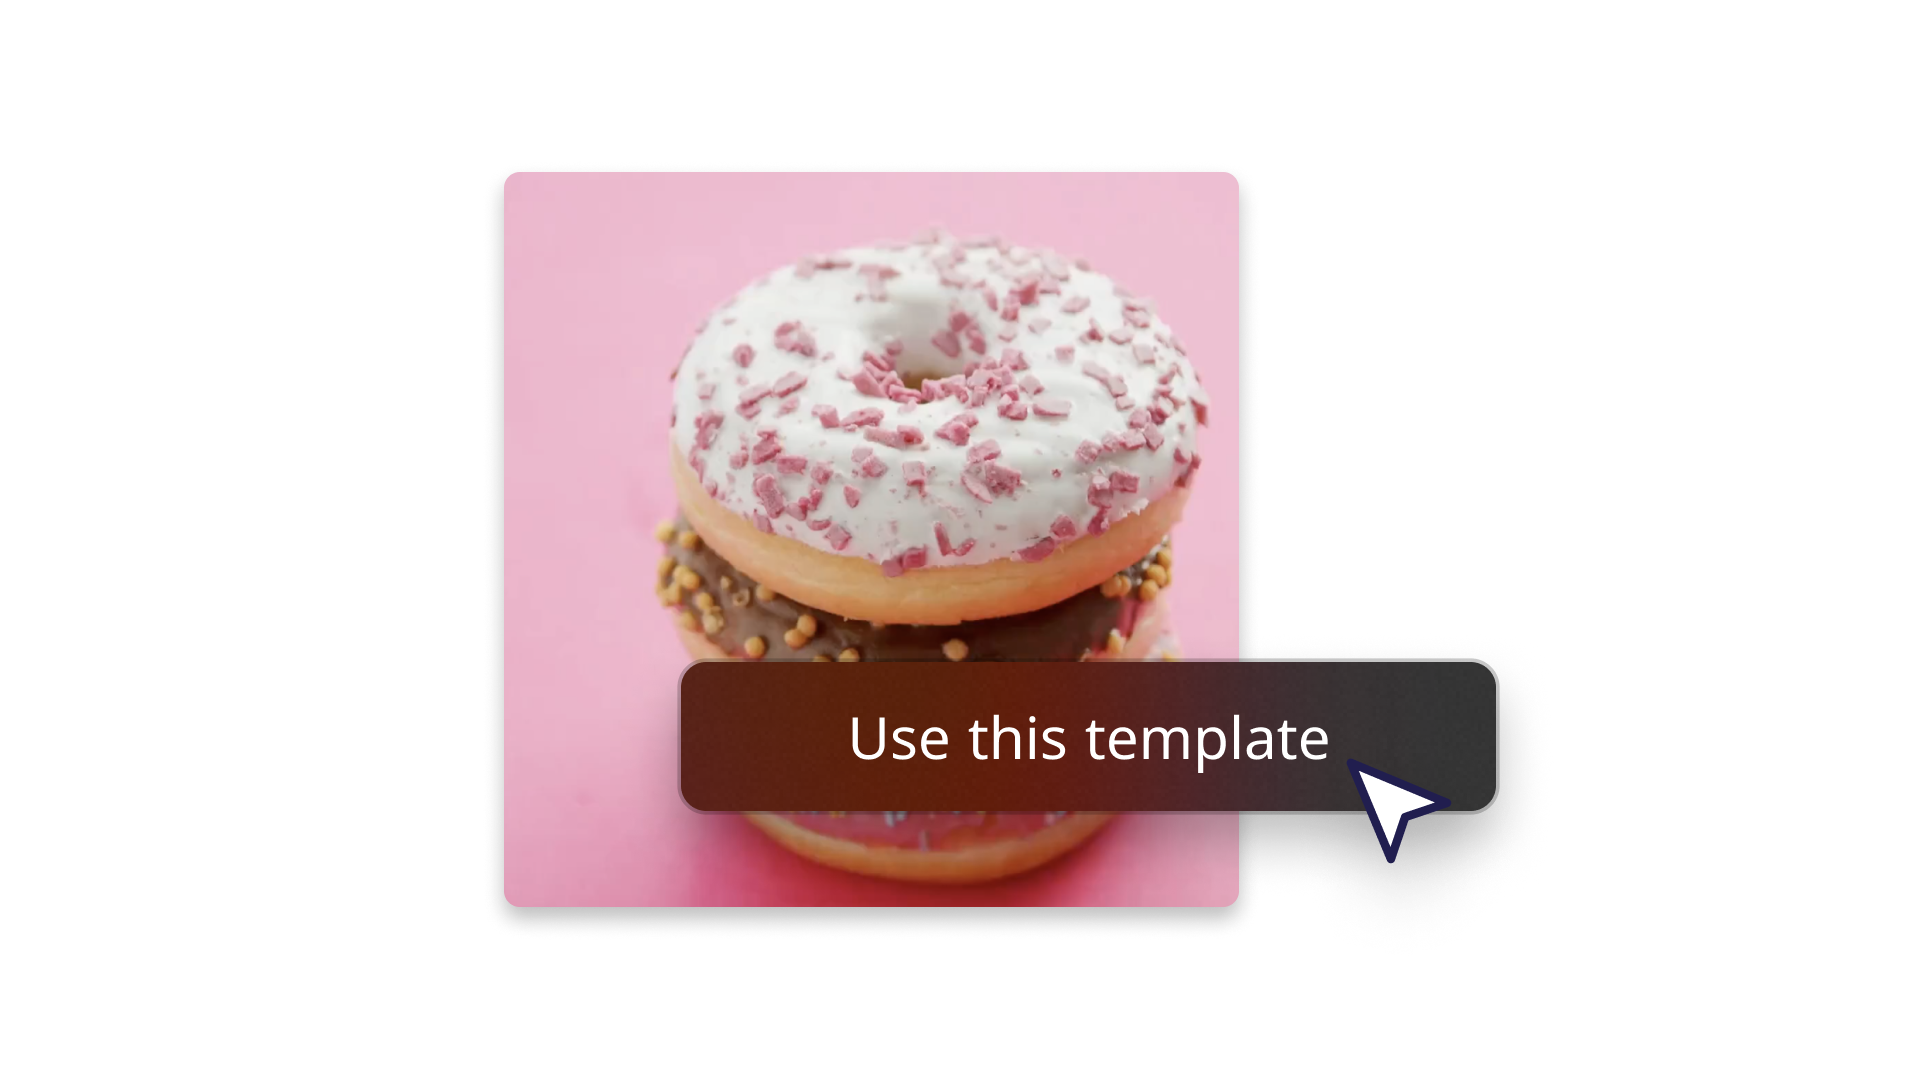 Abstrakt billede med en donut, der viser, hvordan man bruger en skabelon 